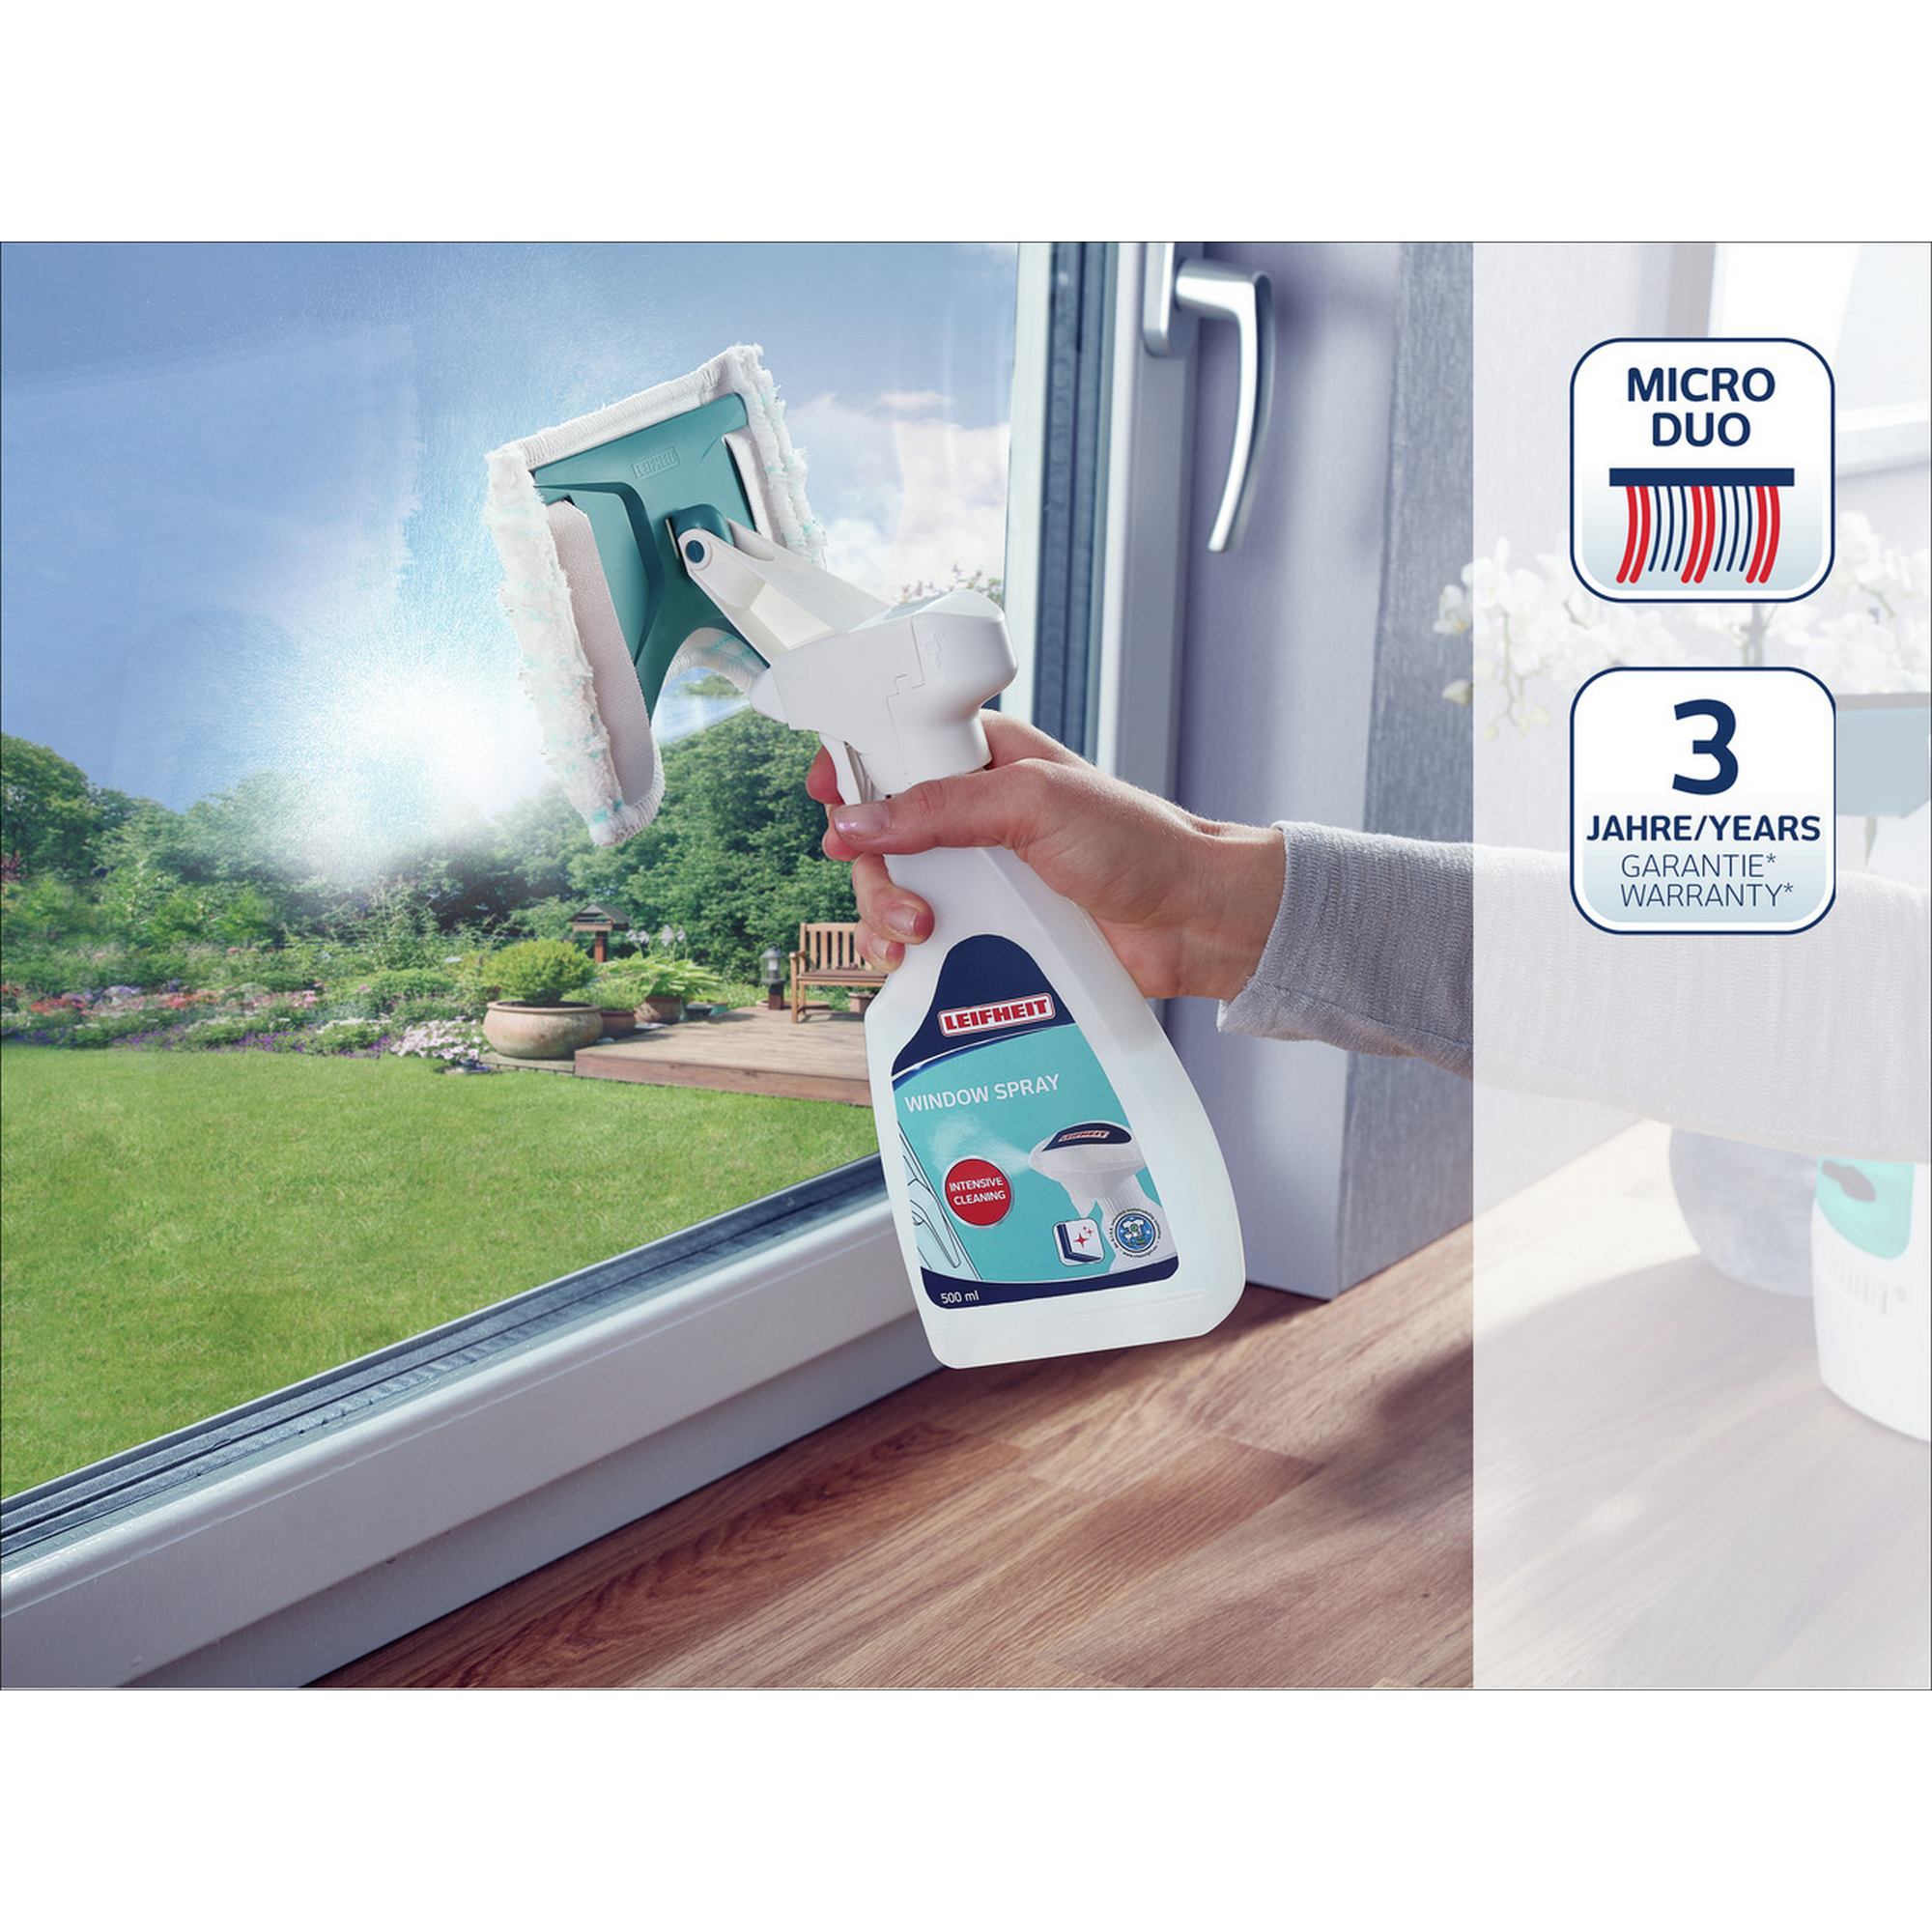 Fensterspray 'Window Spray Cleaner' 500 ml mit Wischer + product picture